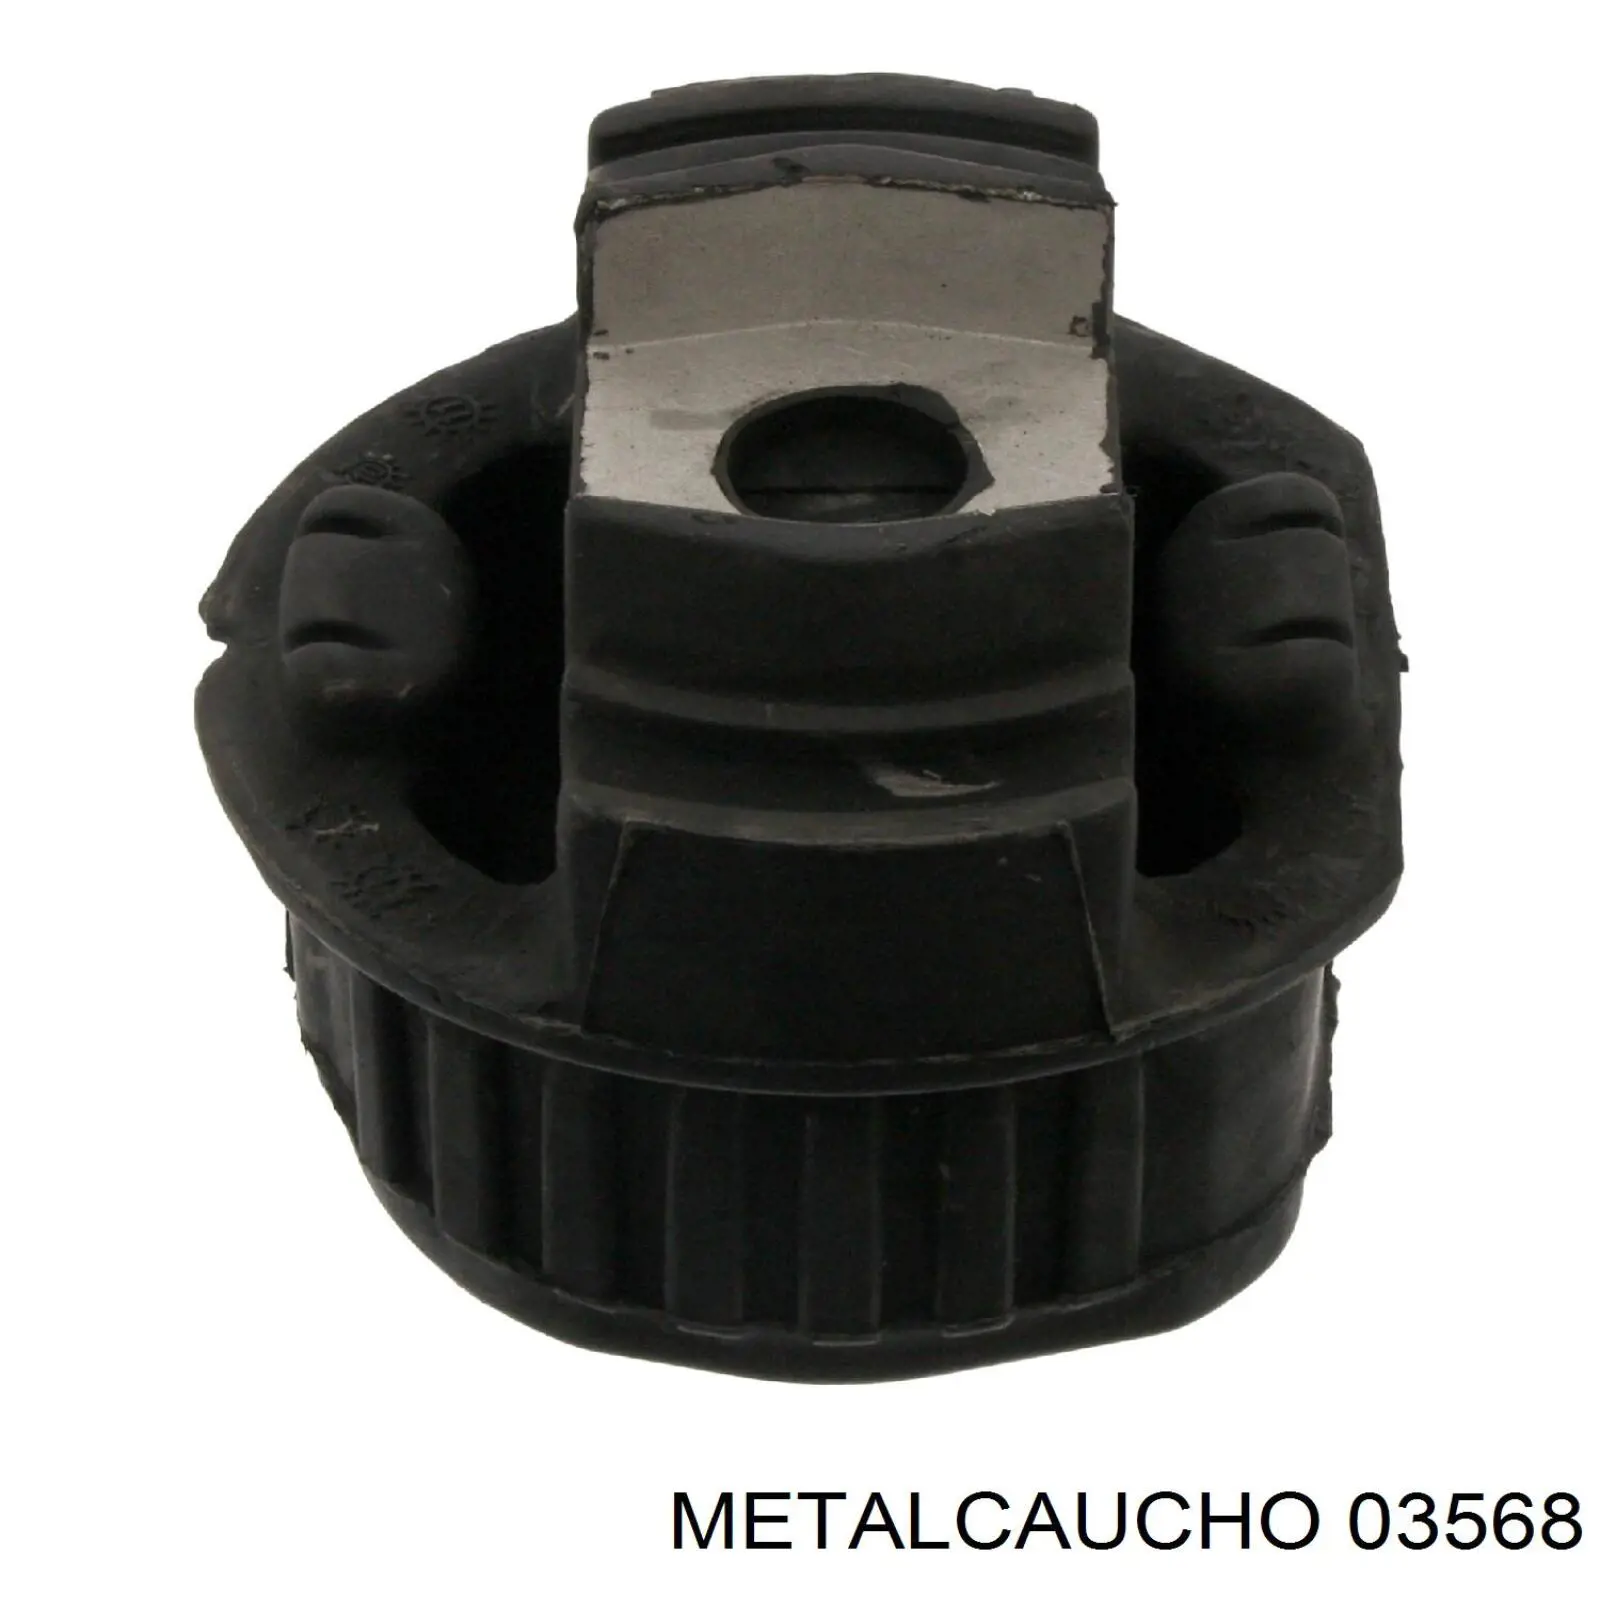 03568 Metalcaucho направляющая щупа-индикатора уровня масла в двигателе